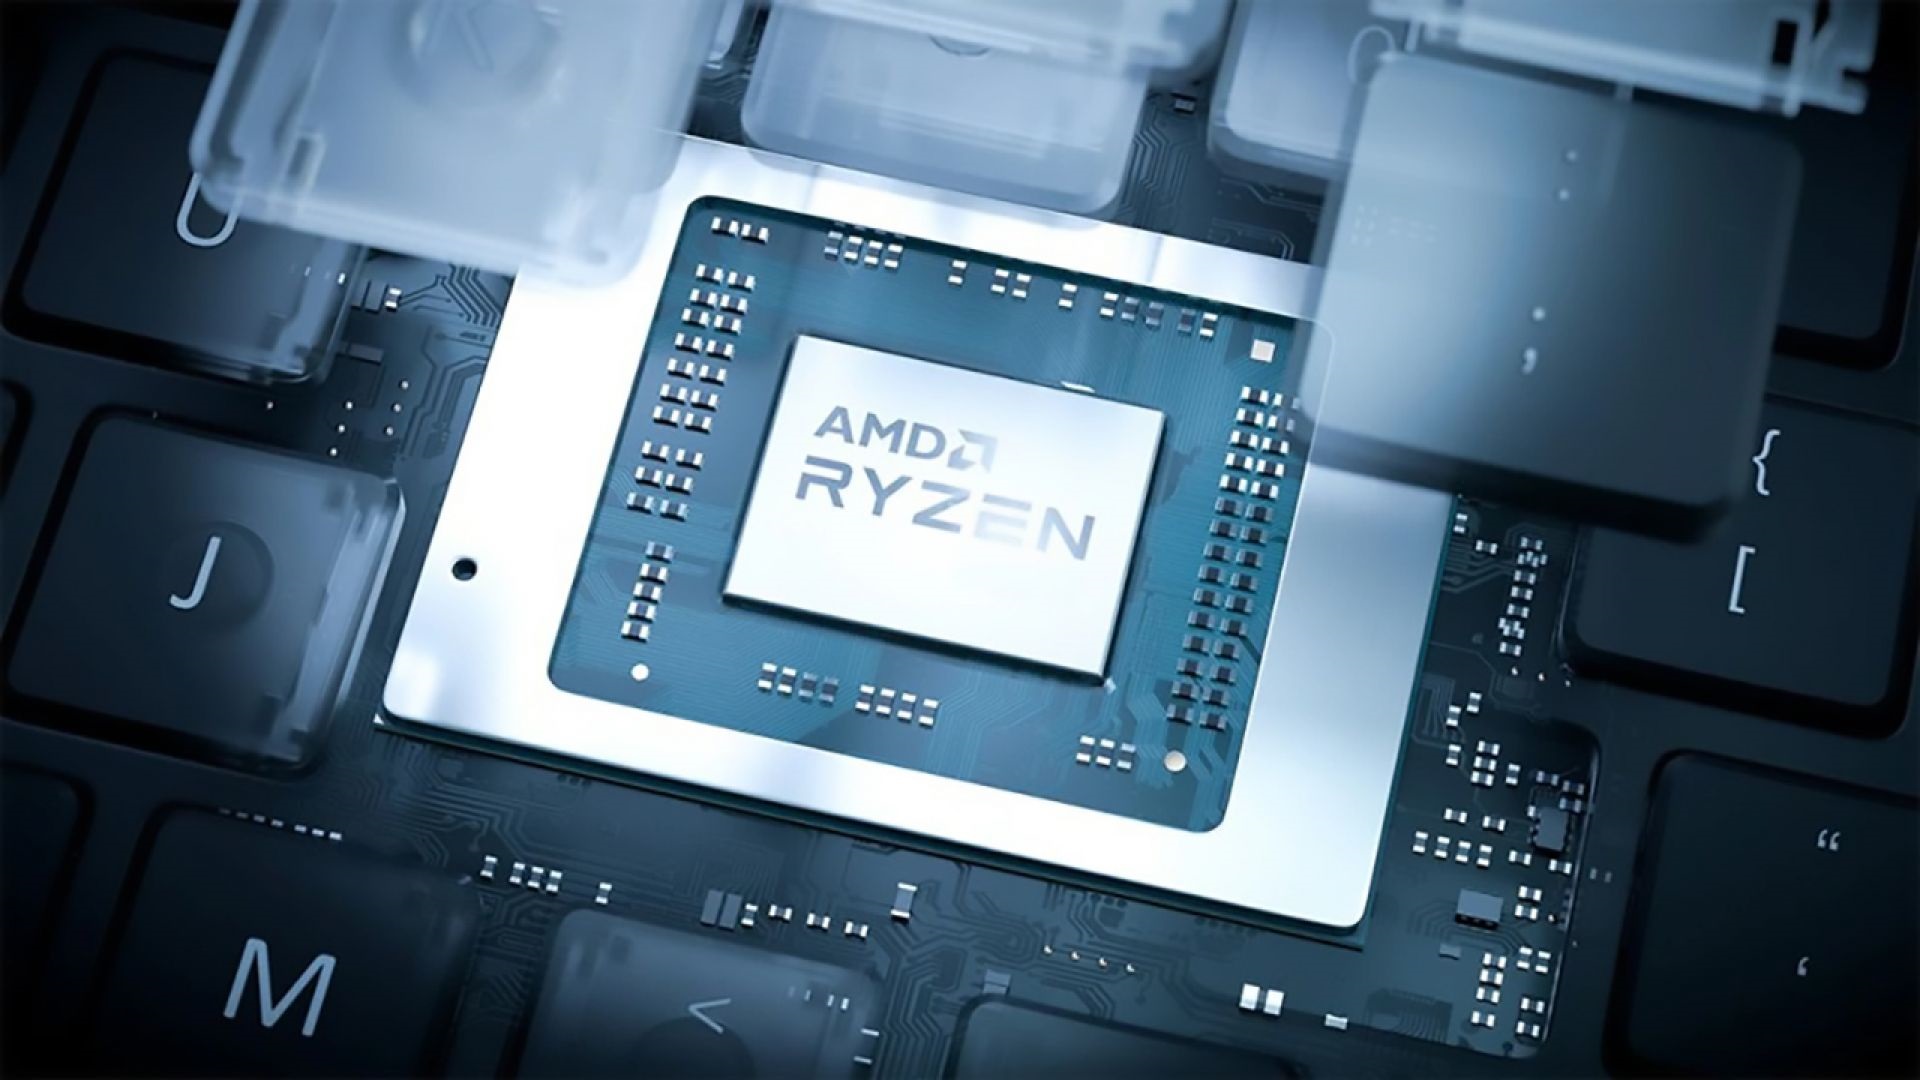 نقد و بررسی AMD Ryzen 9 5900HX در مقابل Ryzen 7 5800H؛ دو پرچمدار خشمگین